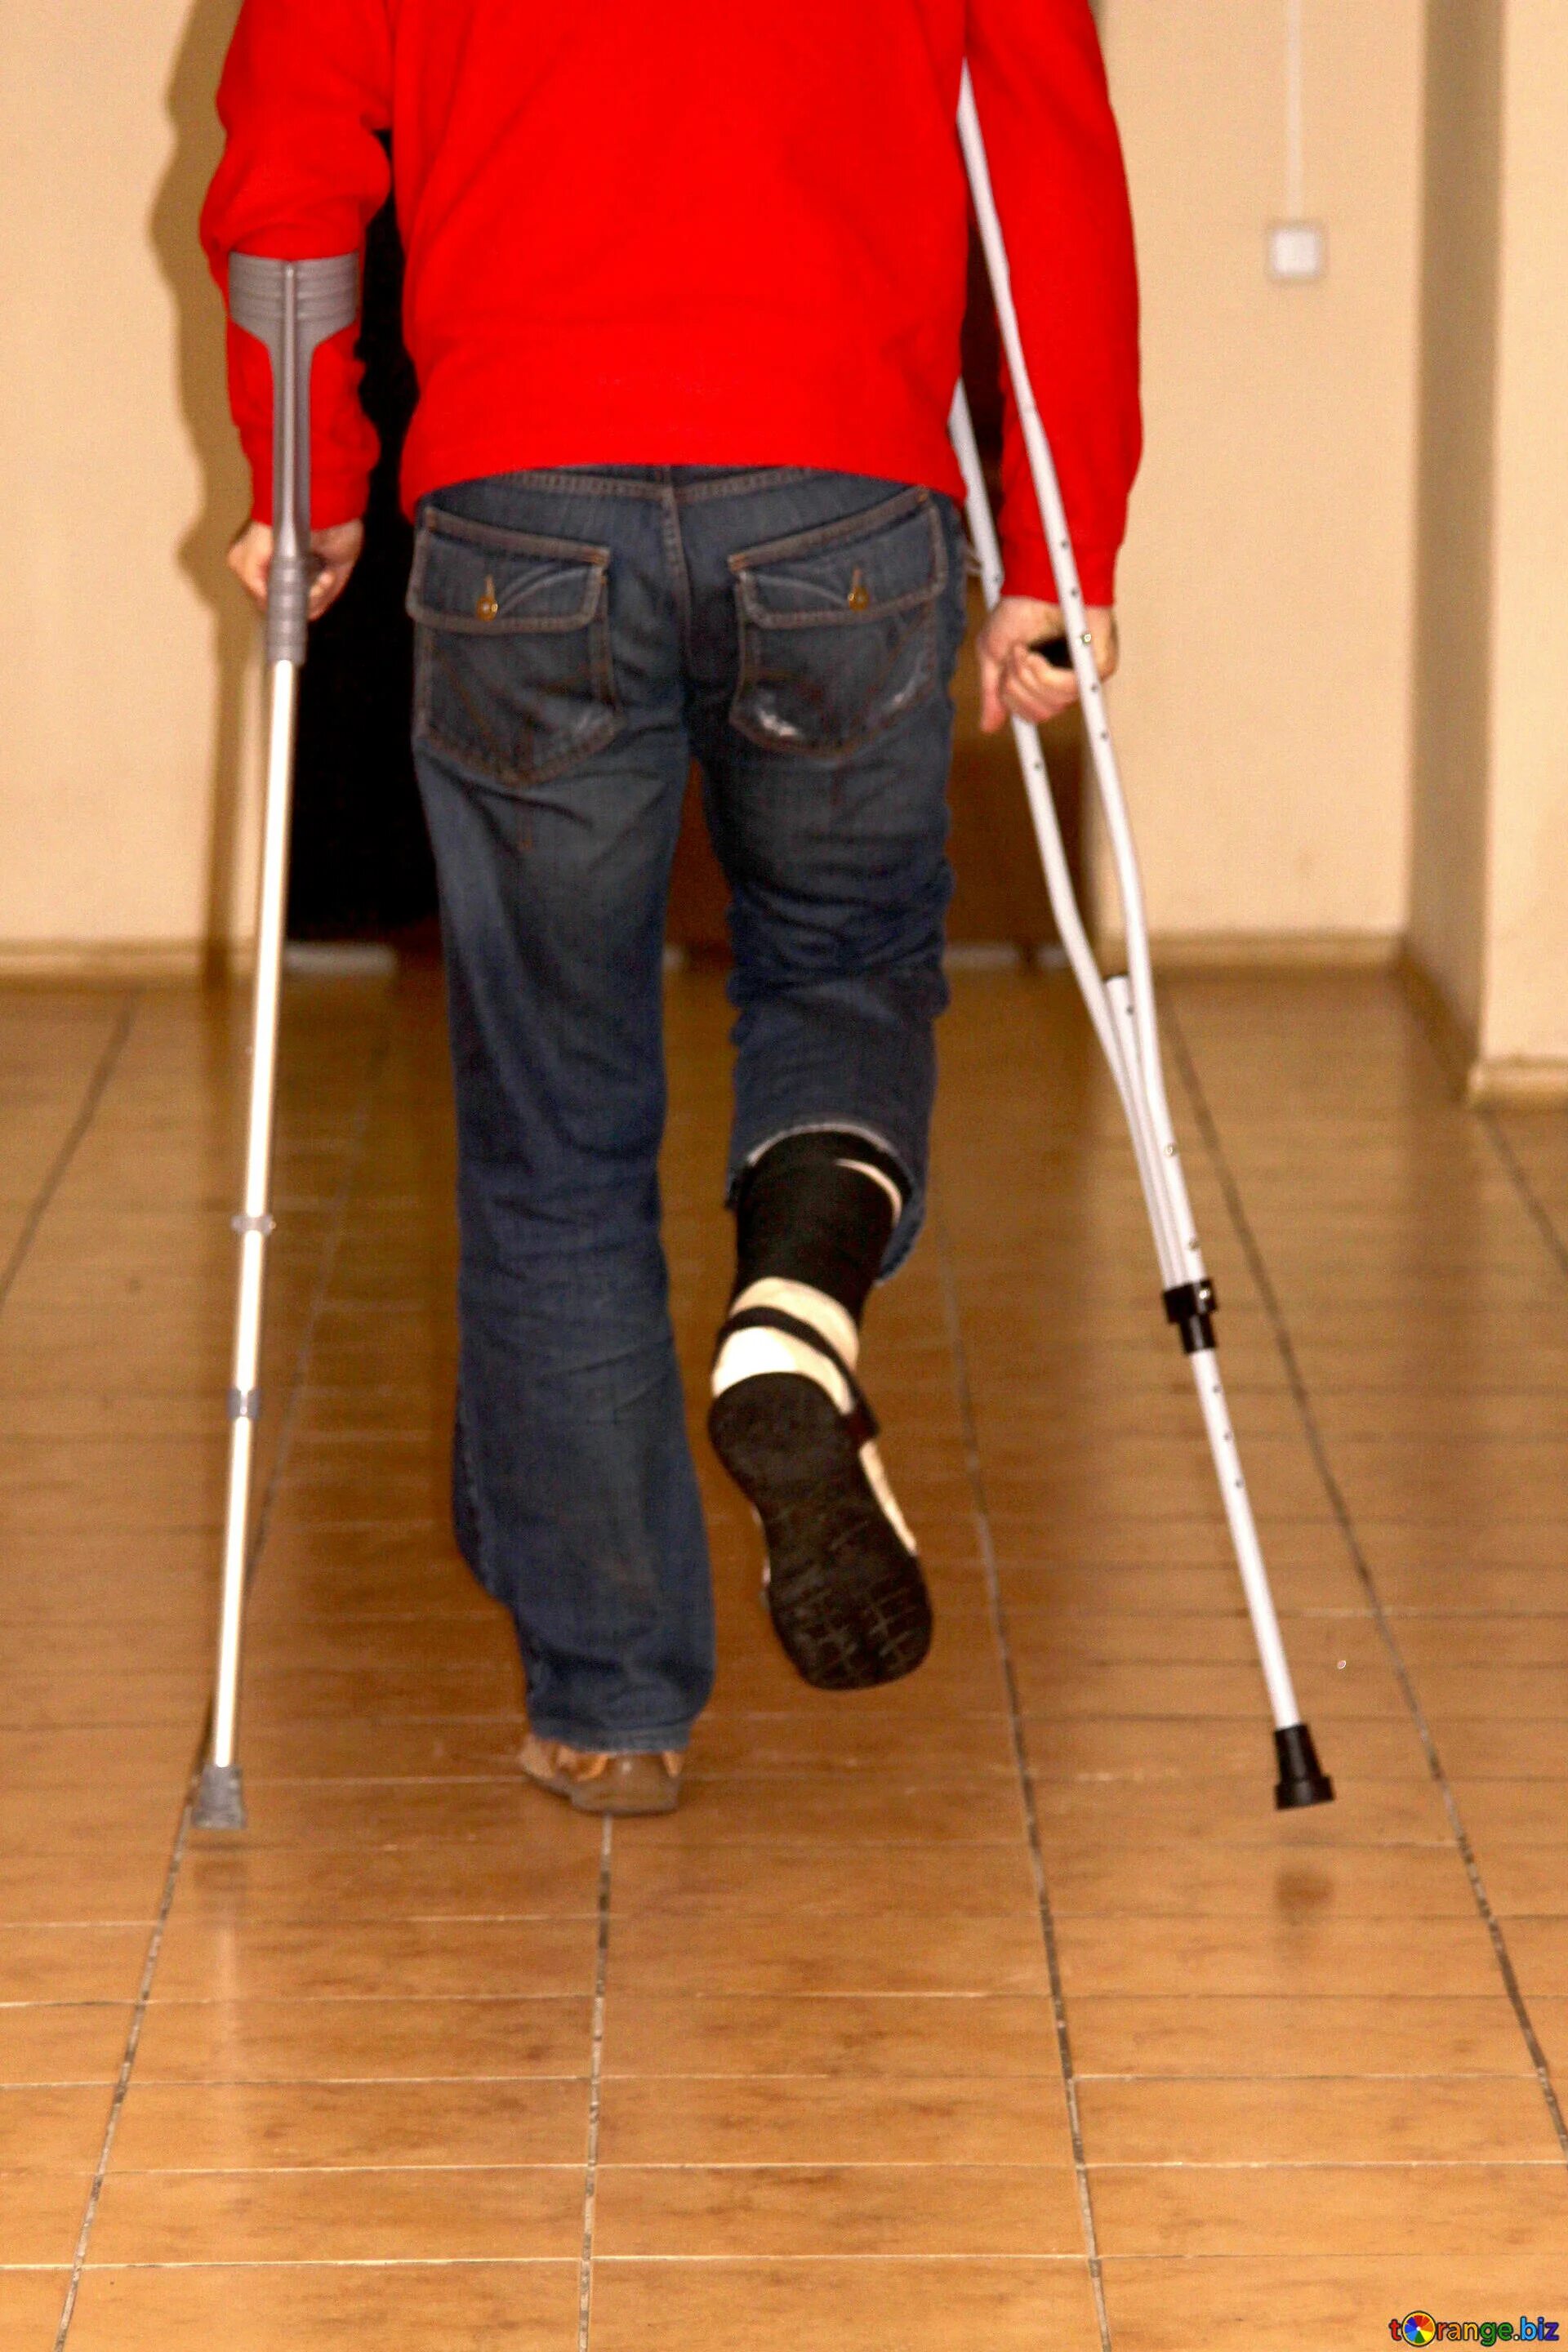 Какие костыли после эндопротезирования. Человек на костылях. Парень на костылях. Палки для ходьбы с больными ногами. Костыли для больных.